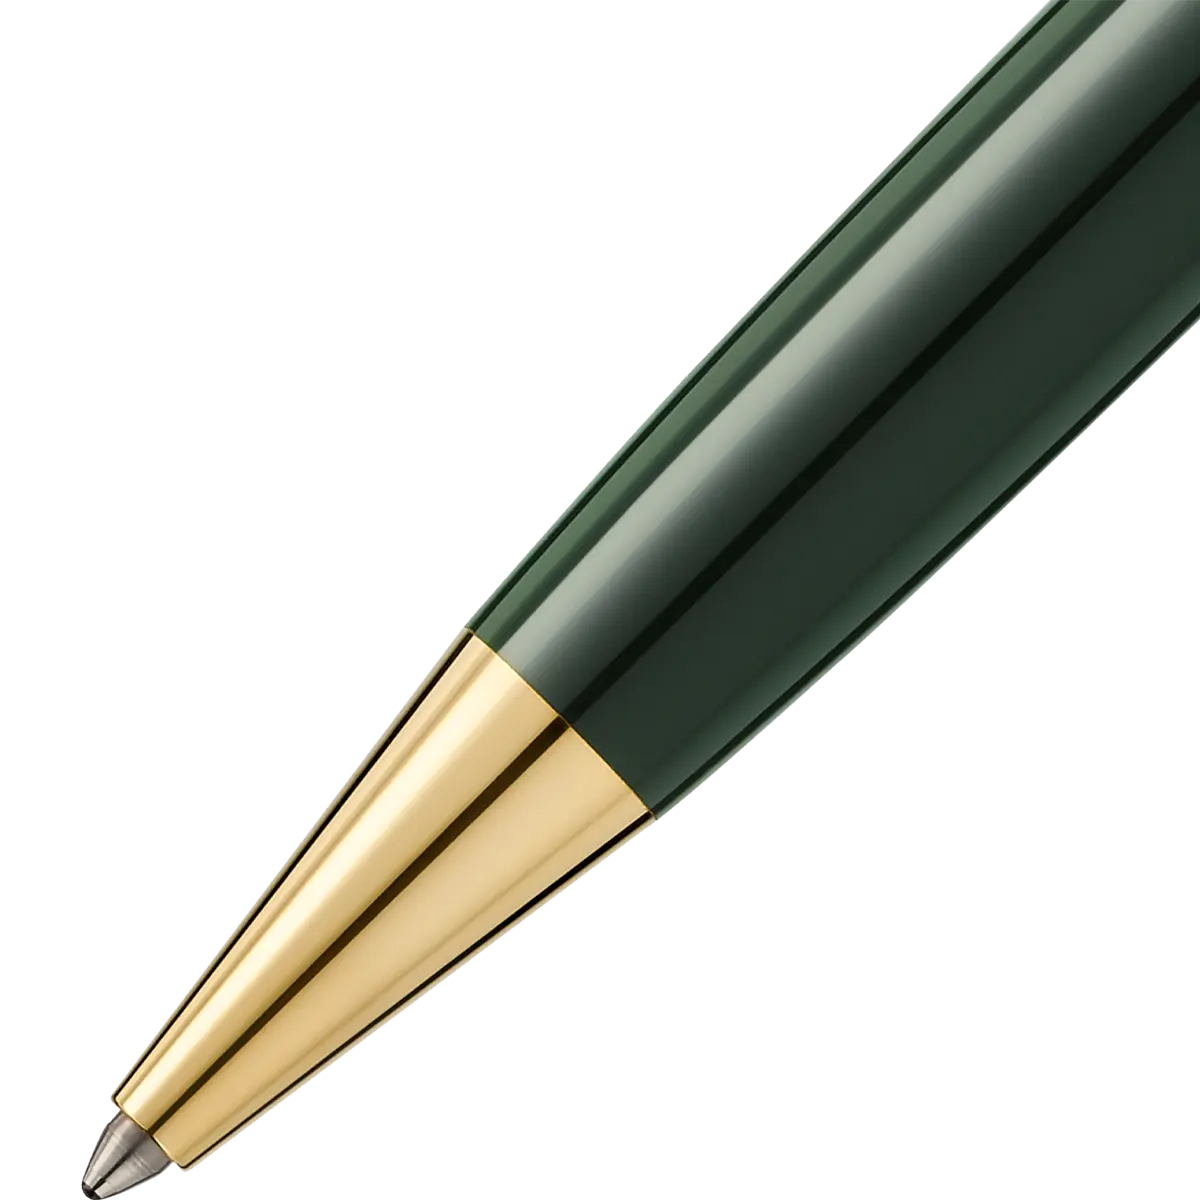 Montblanc Meisterstuck Ballpoint Pen - 164 The Origin Green Montblanc